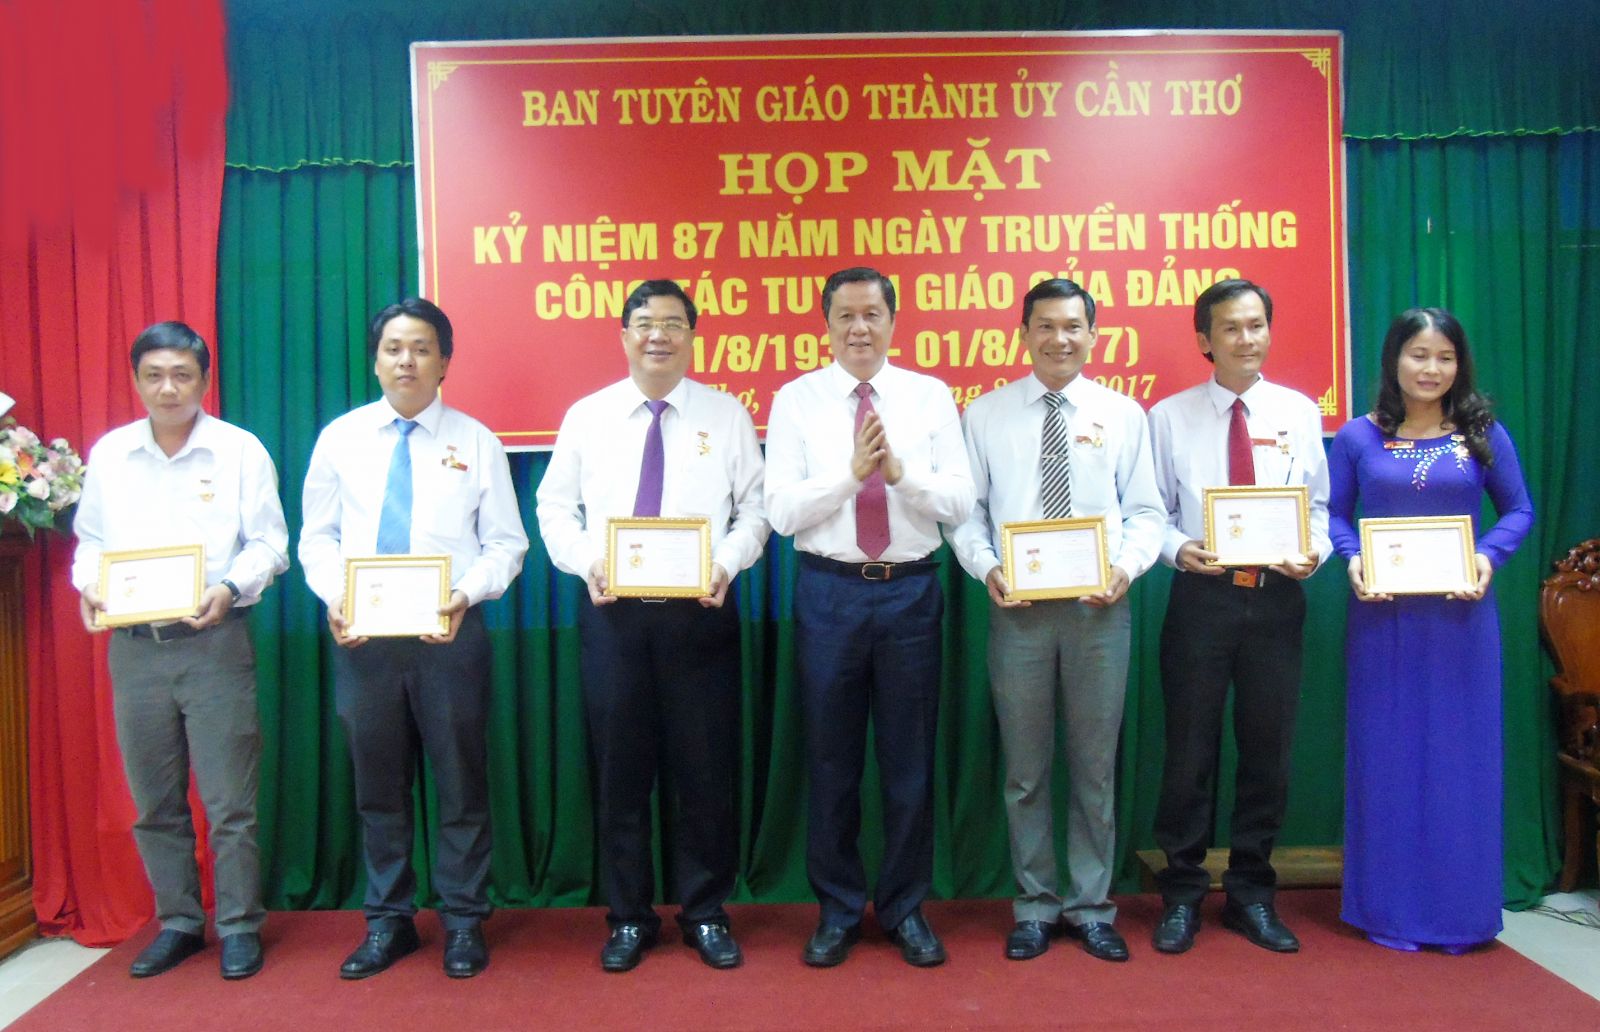 Đồng chí Phạm Văn Hiểu, Phó Bí thư Thường trực Thành ủy, trao Kỷ niệm chương “Vì sự nghiệp Tuyên giáo”.